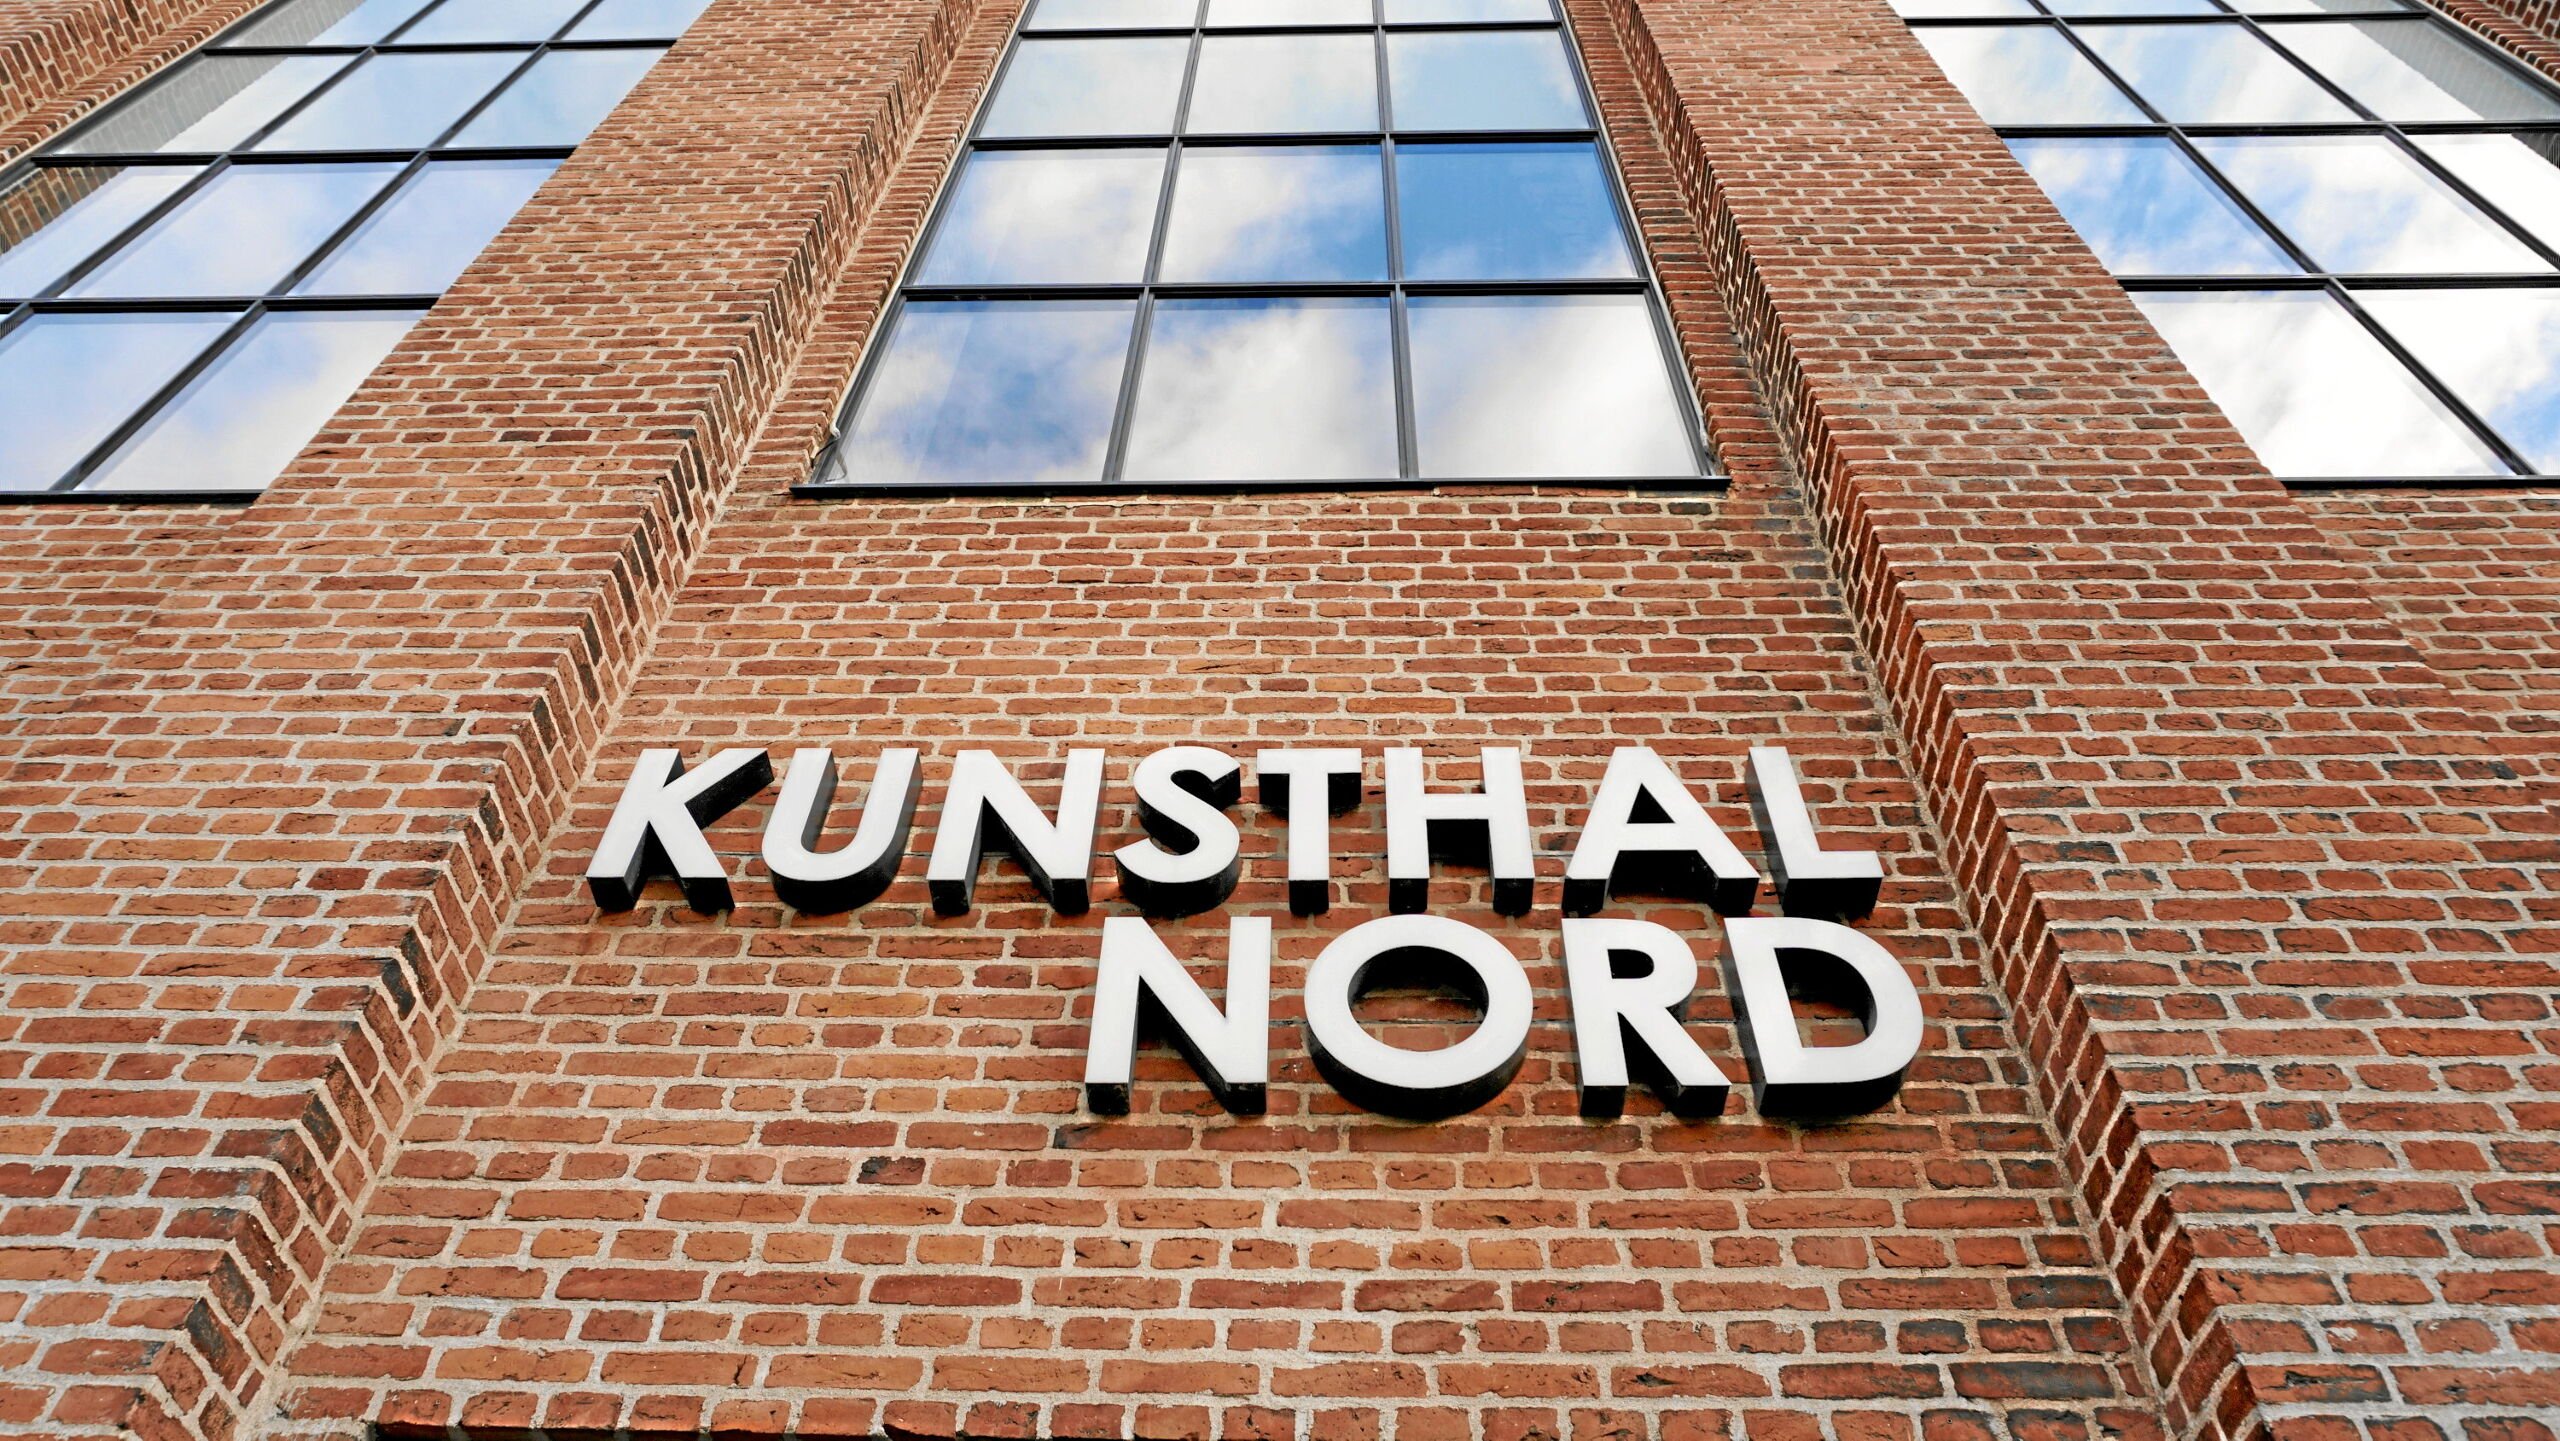 Penge til Kunsthal Nord - men ingen leder